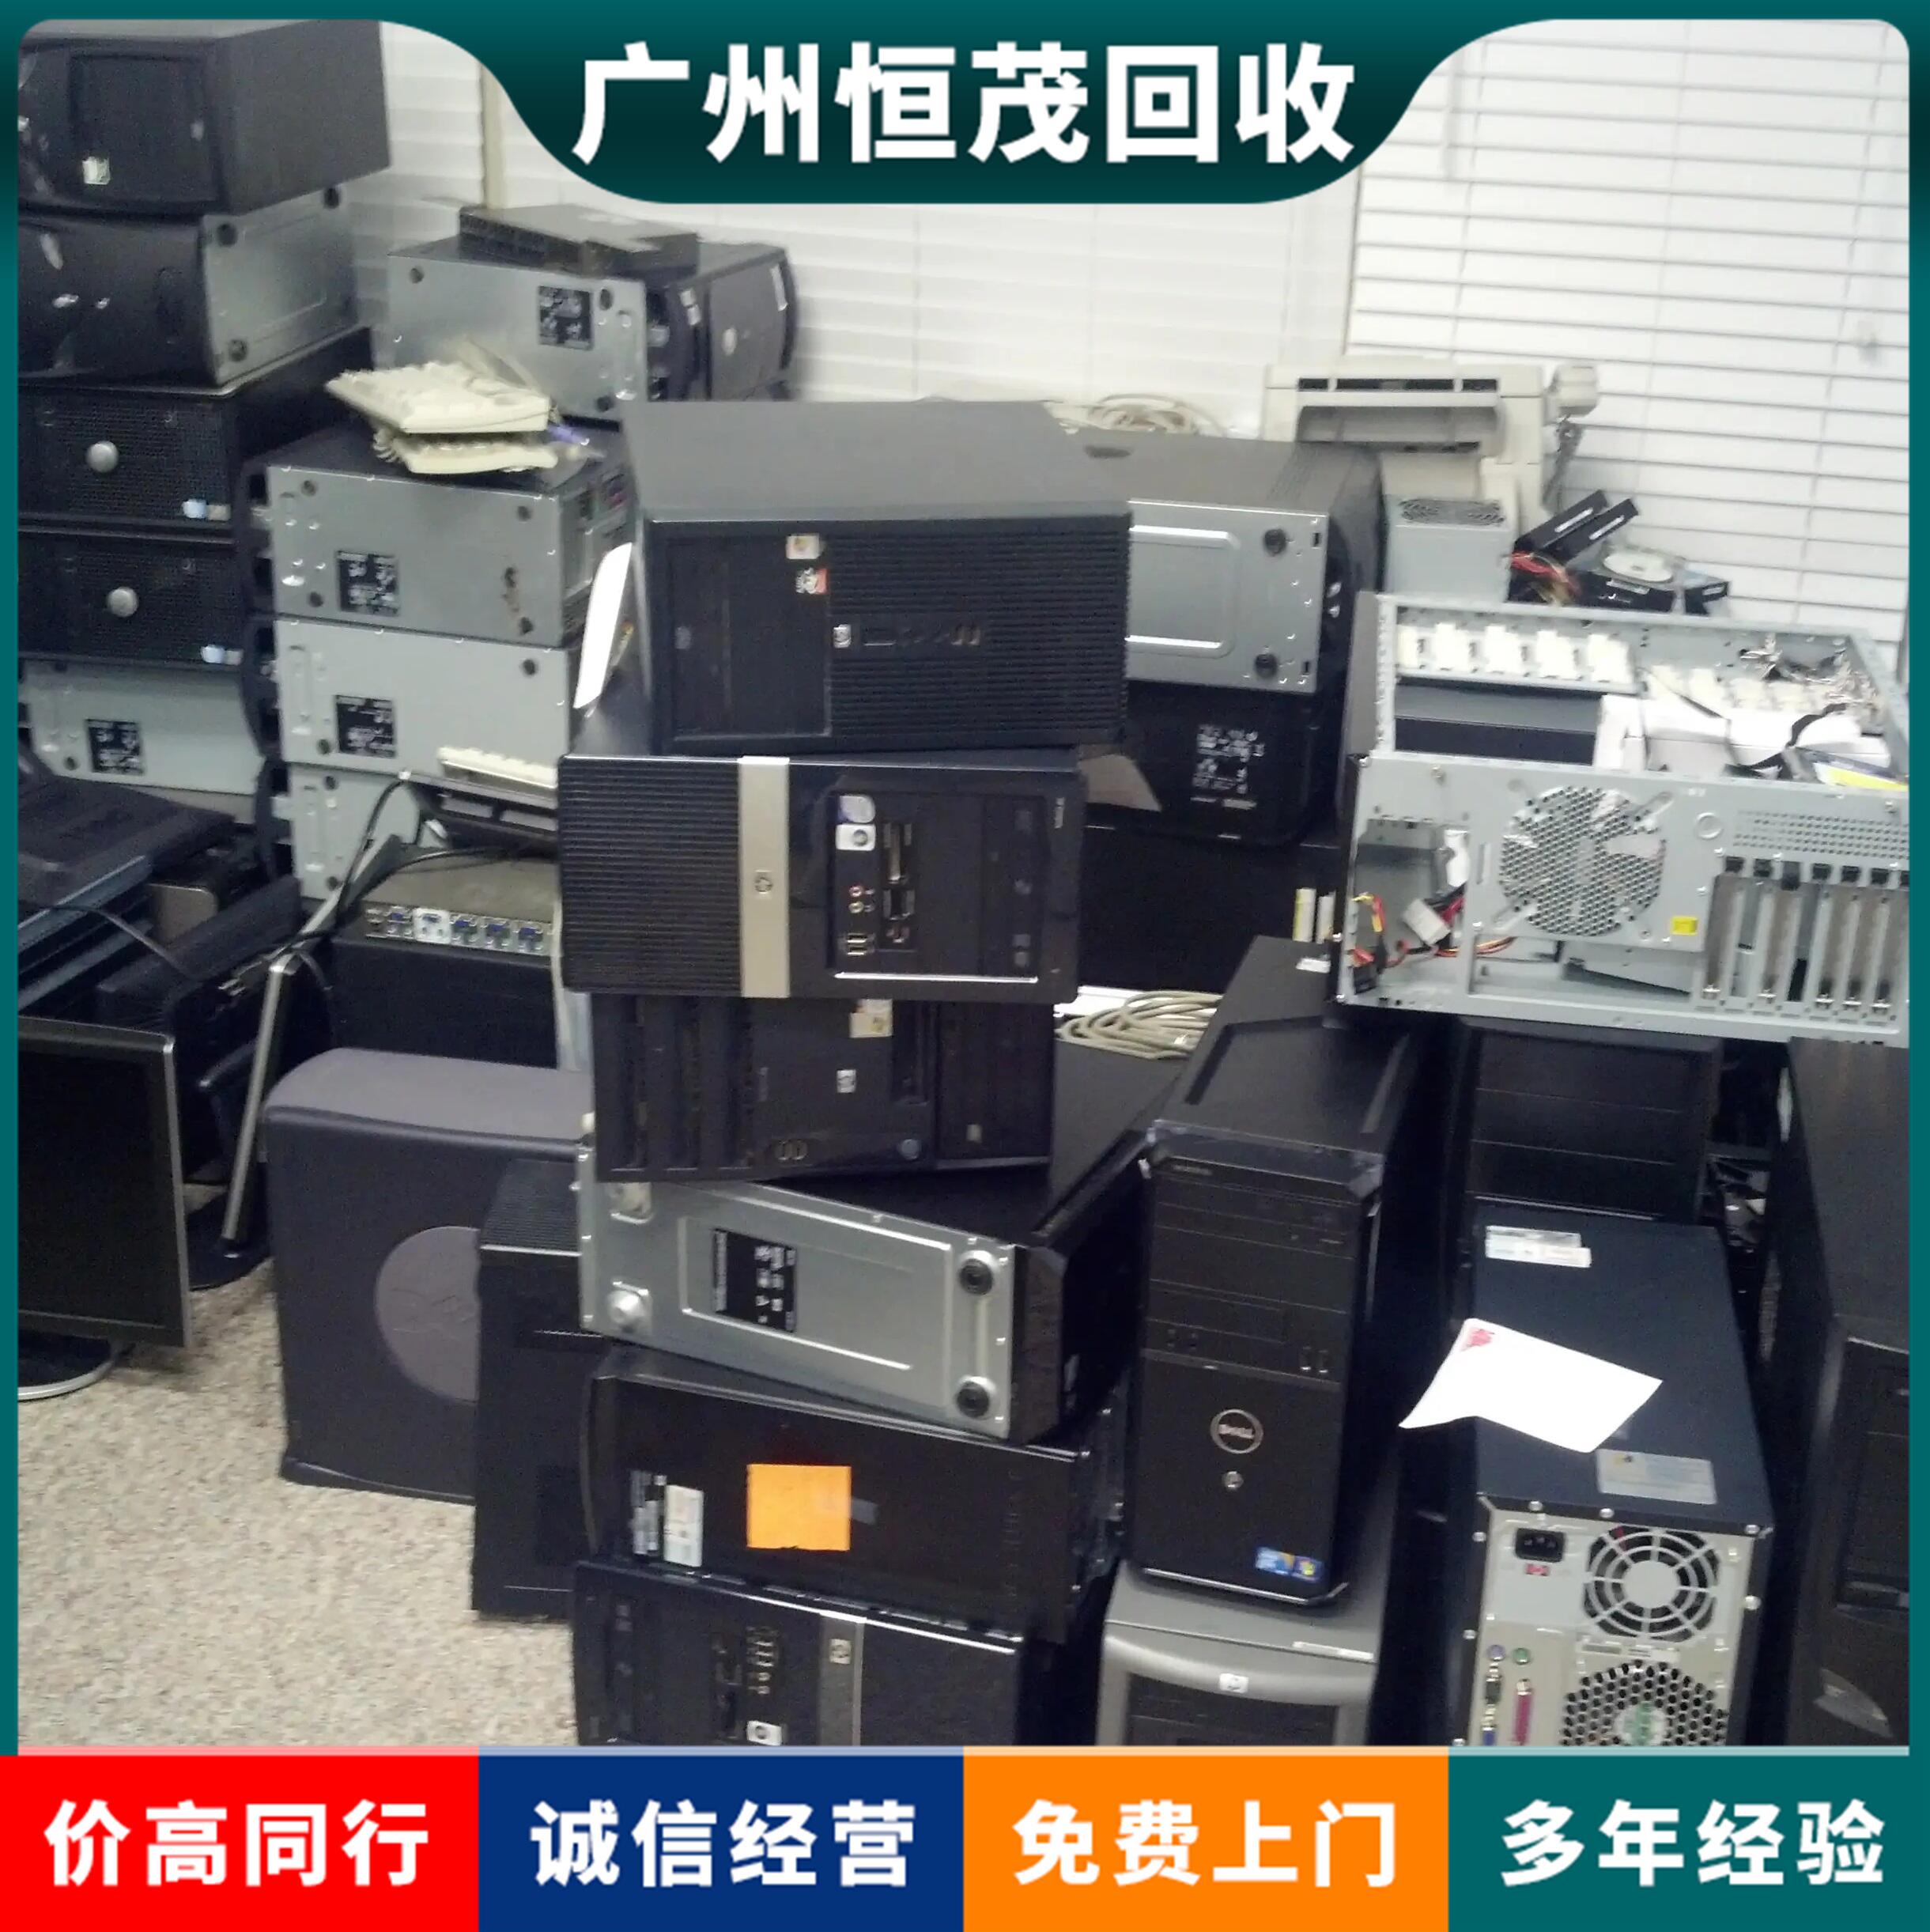 洪梅镇thinkpad电脑回收/多媒体一体机/报废电脑回收评估